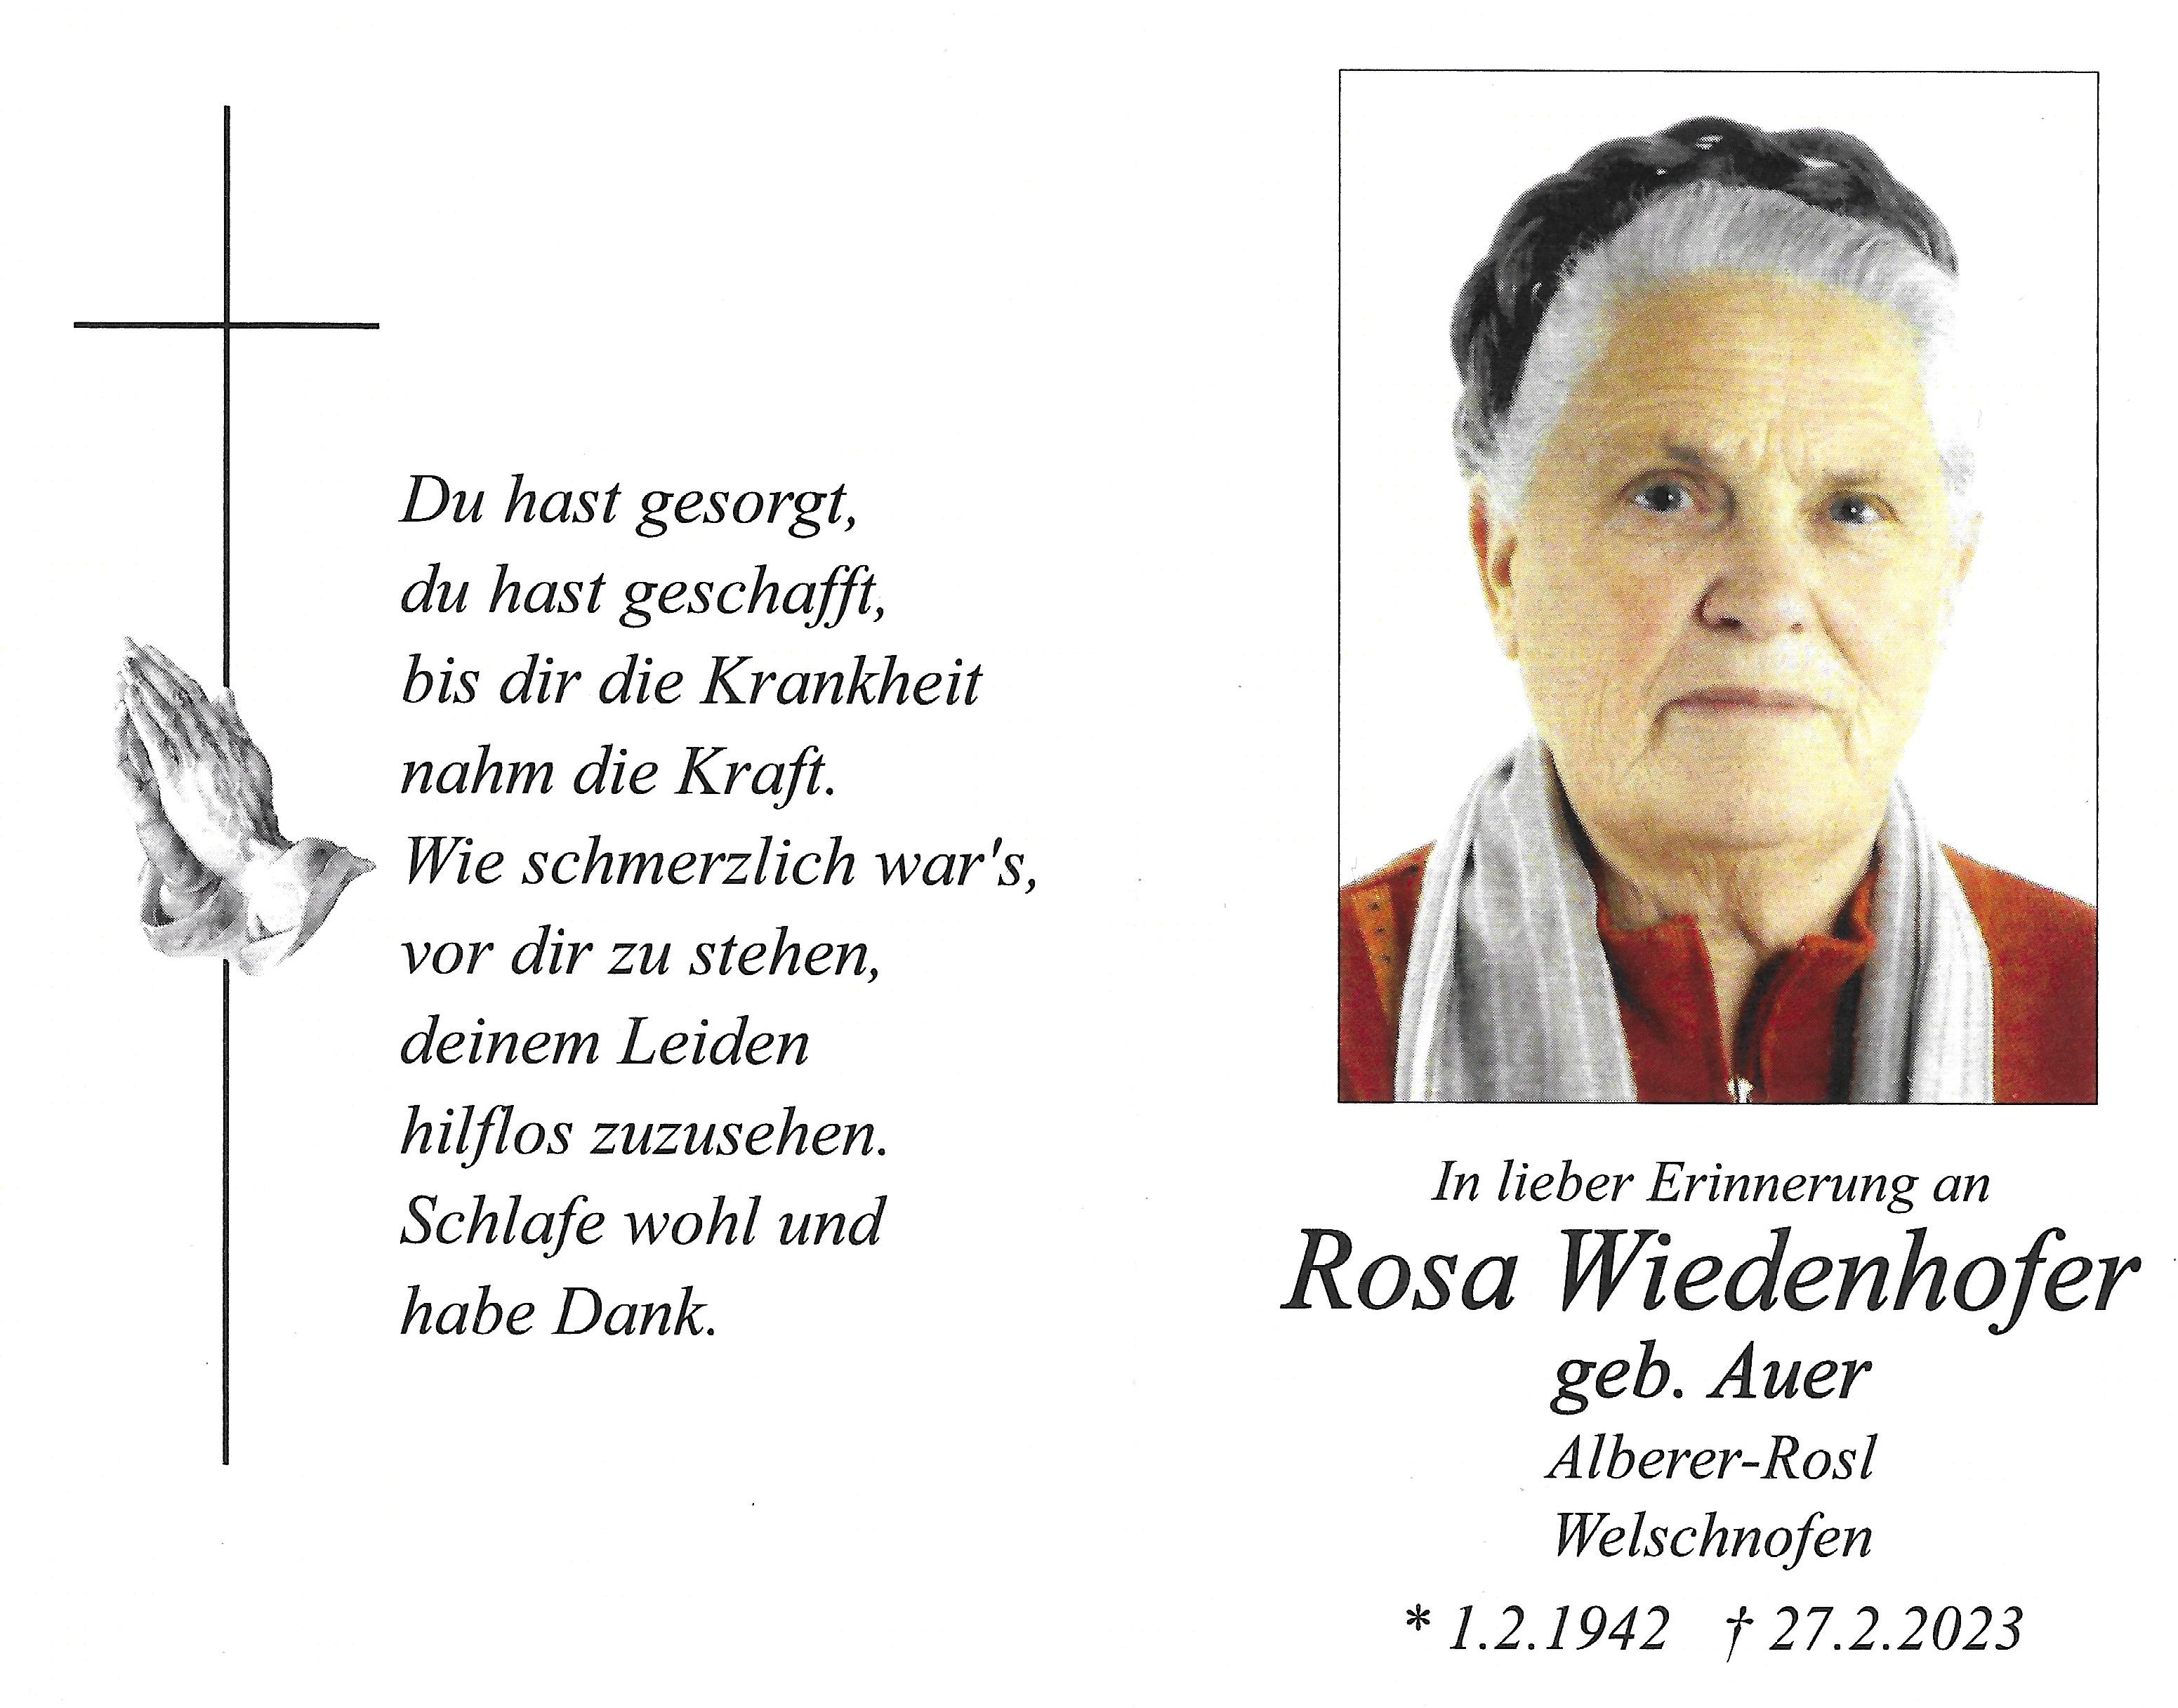 Rosa Wiedenhofer geb. Auer